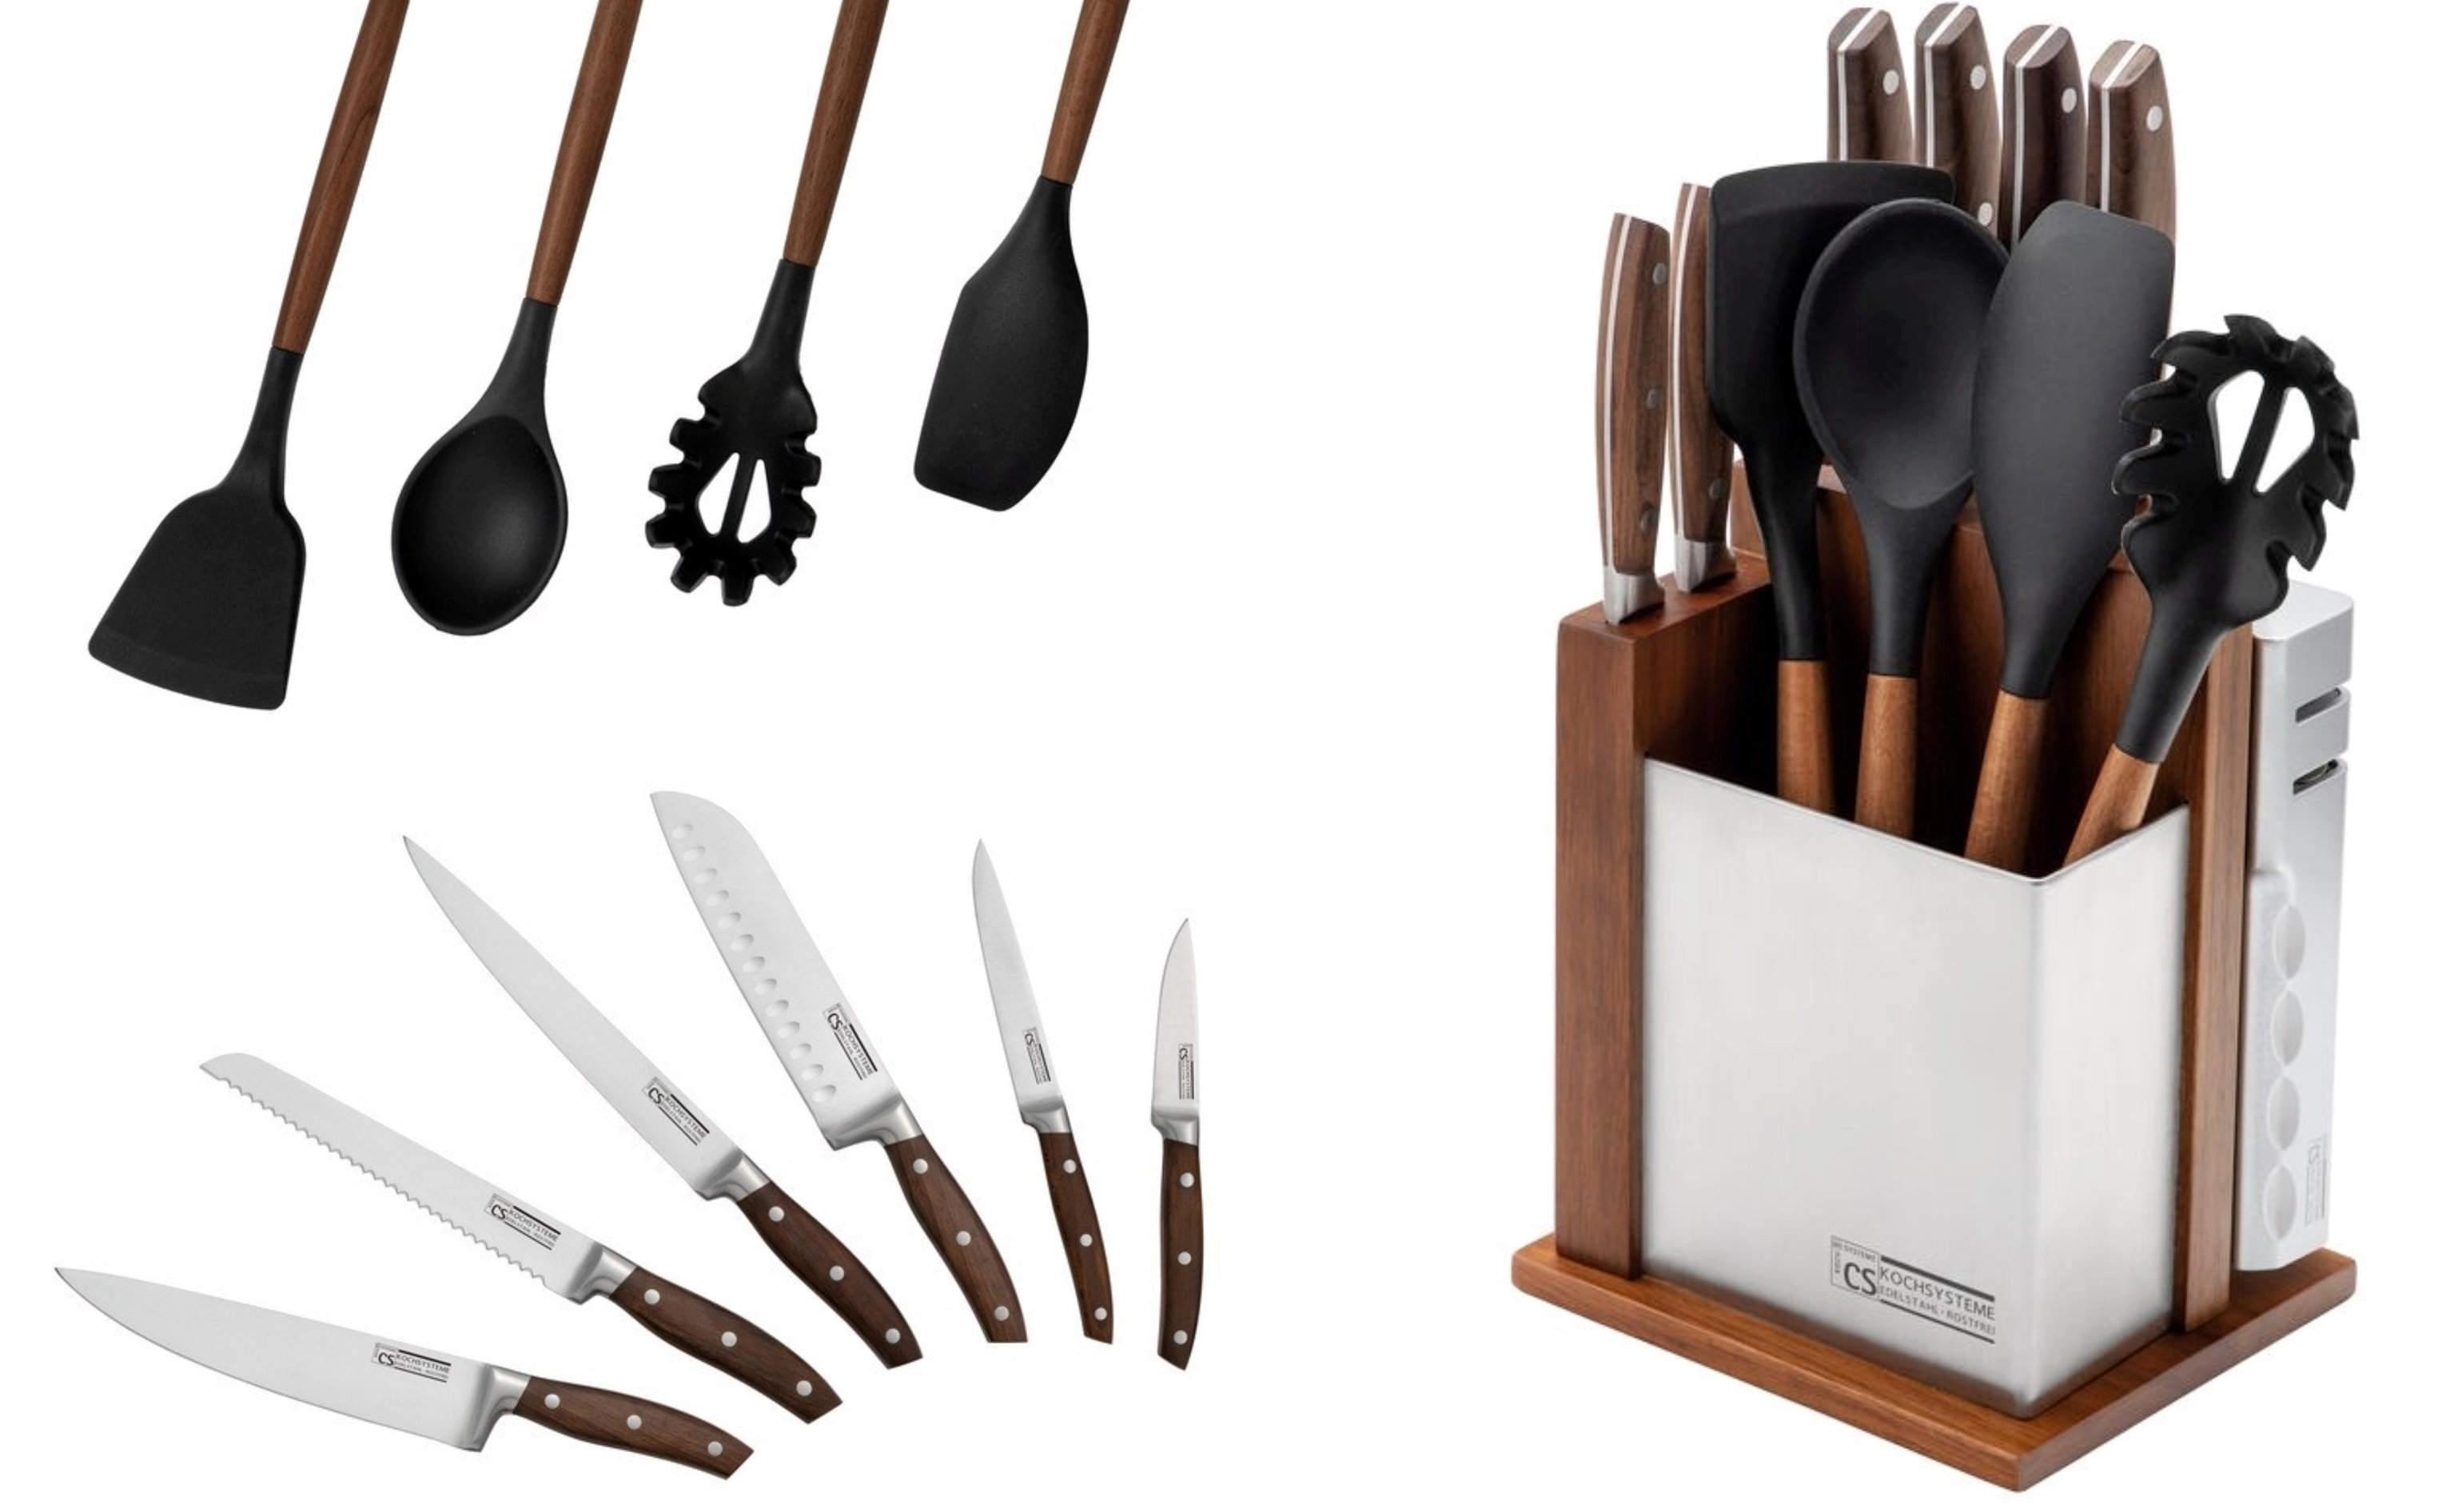 Sada CS Solingen CS-0802288 obsahuje 6 kuchyňských nožů, 4 různé naběračky a stěrky i praktický stojánek s odnímatelným brouskem pro snadnou údržbu.